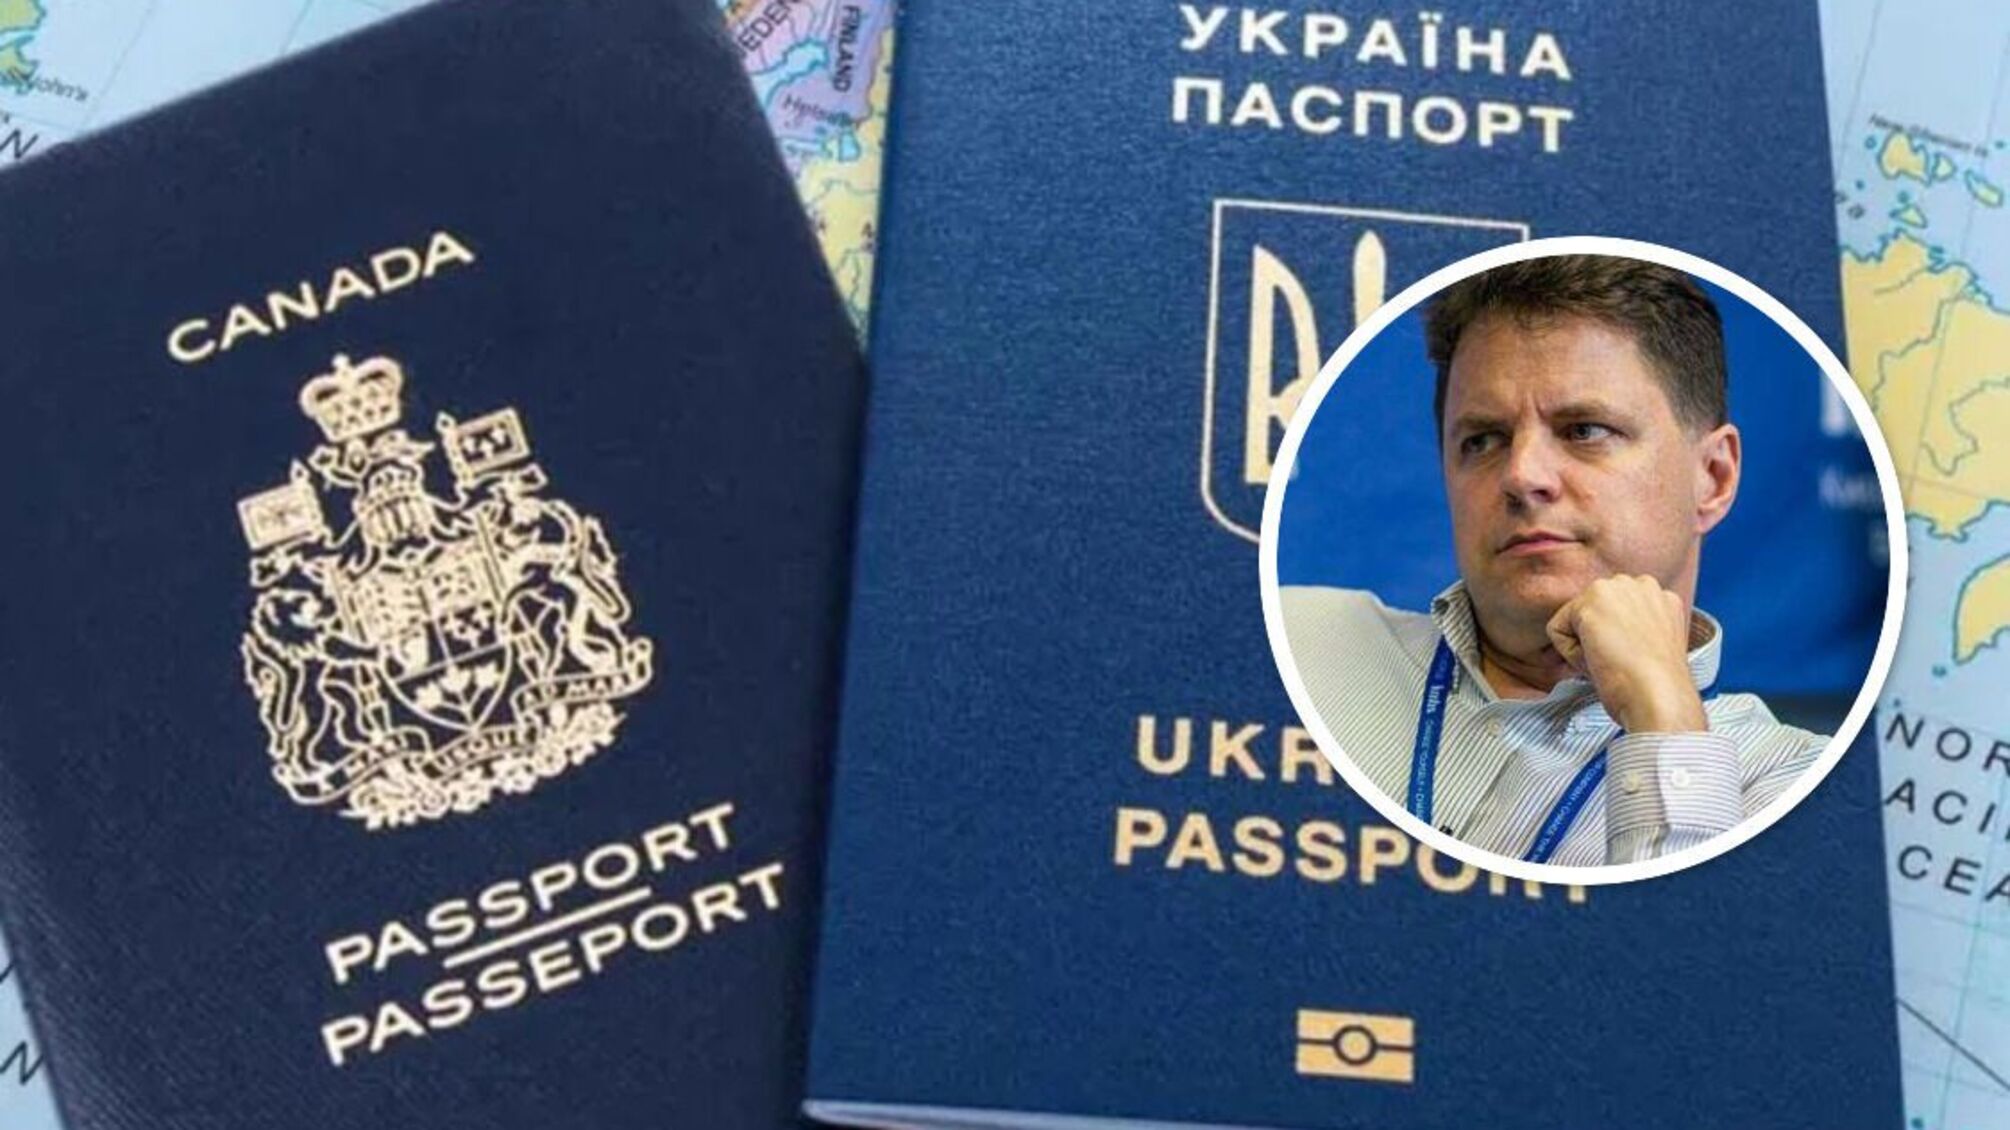 Заместитель главы МОН Михаил Винницкий, вероятно, сохранил канадский паспорт, уже имея украинский